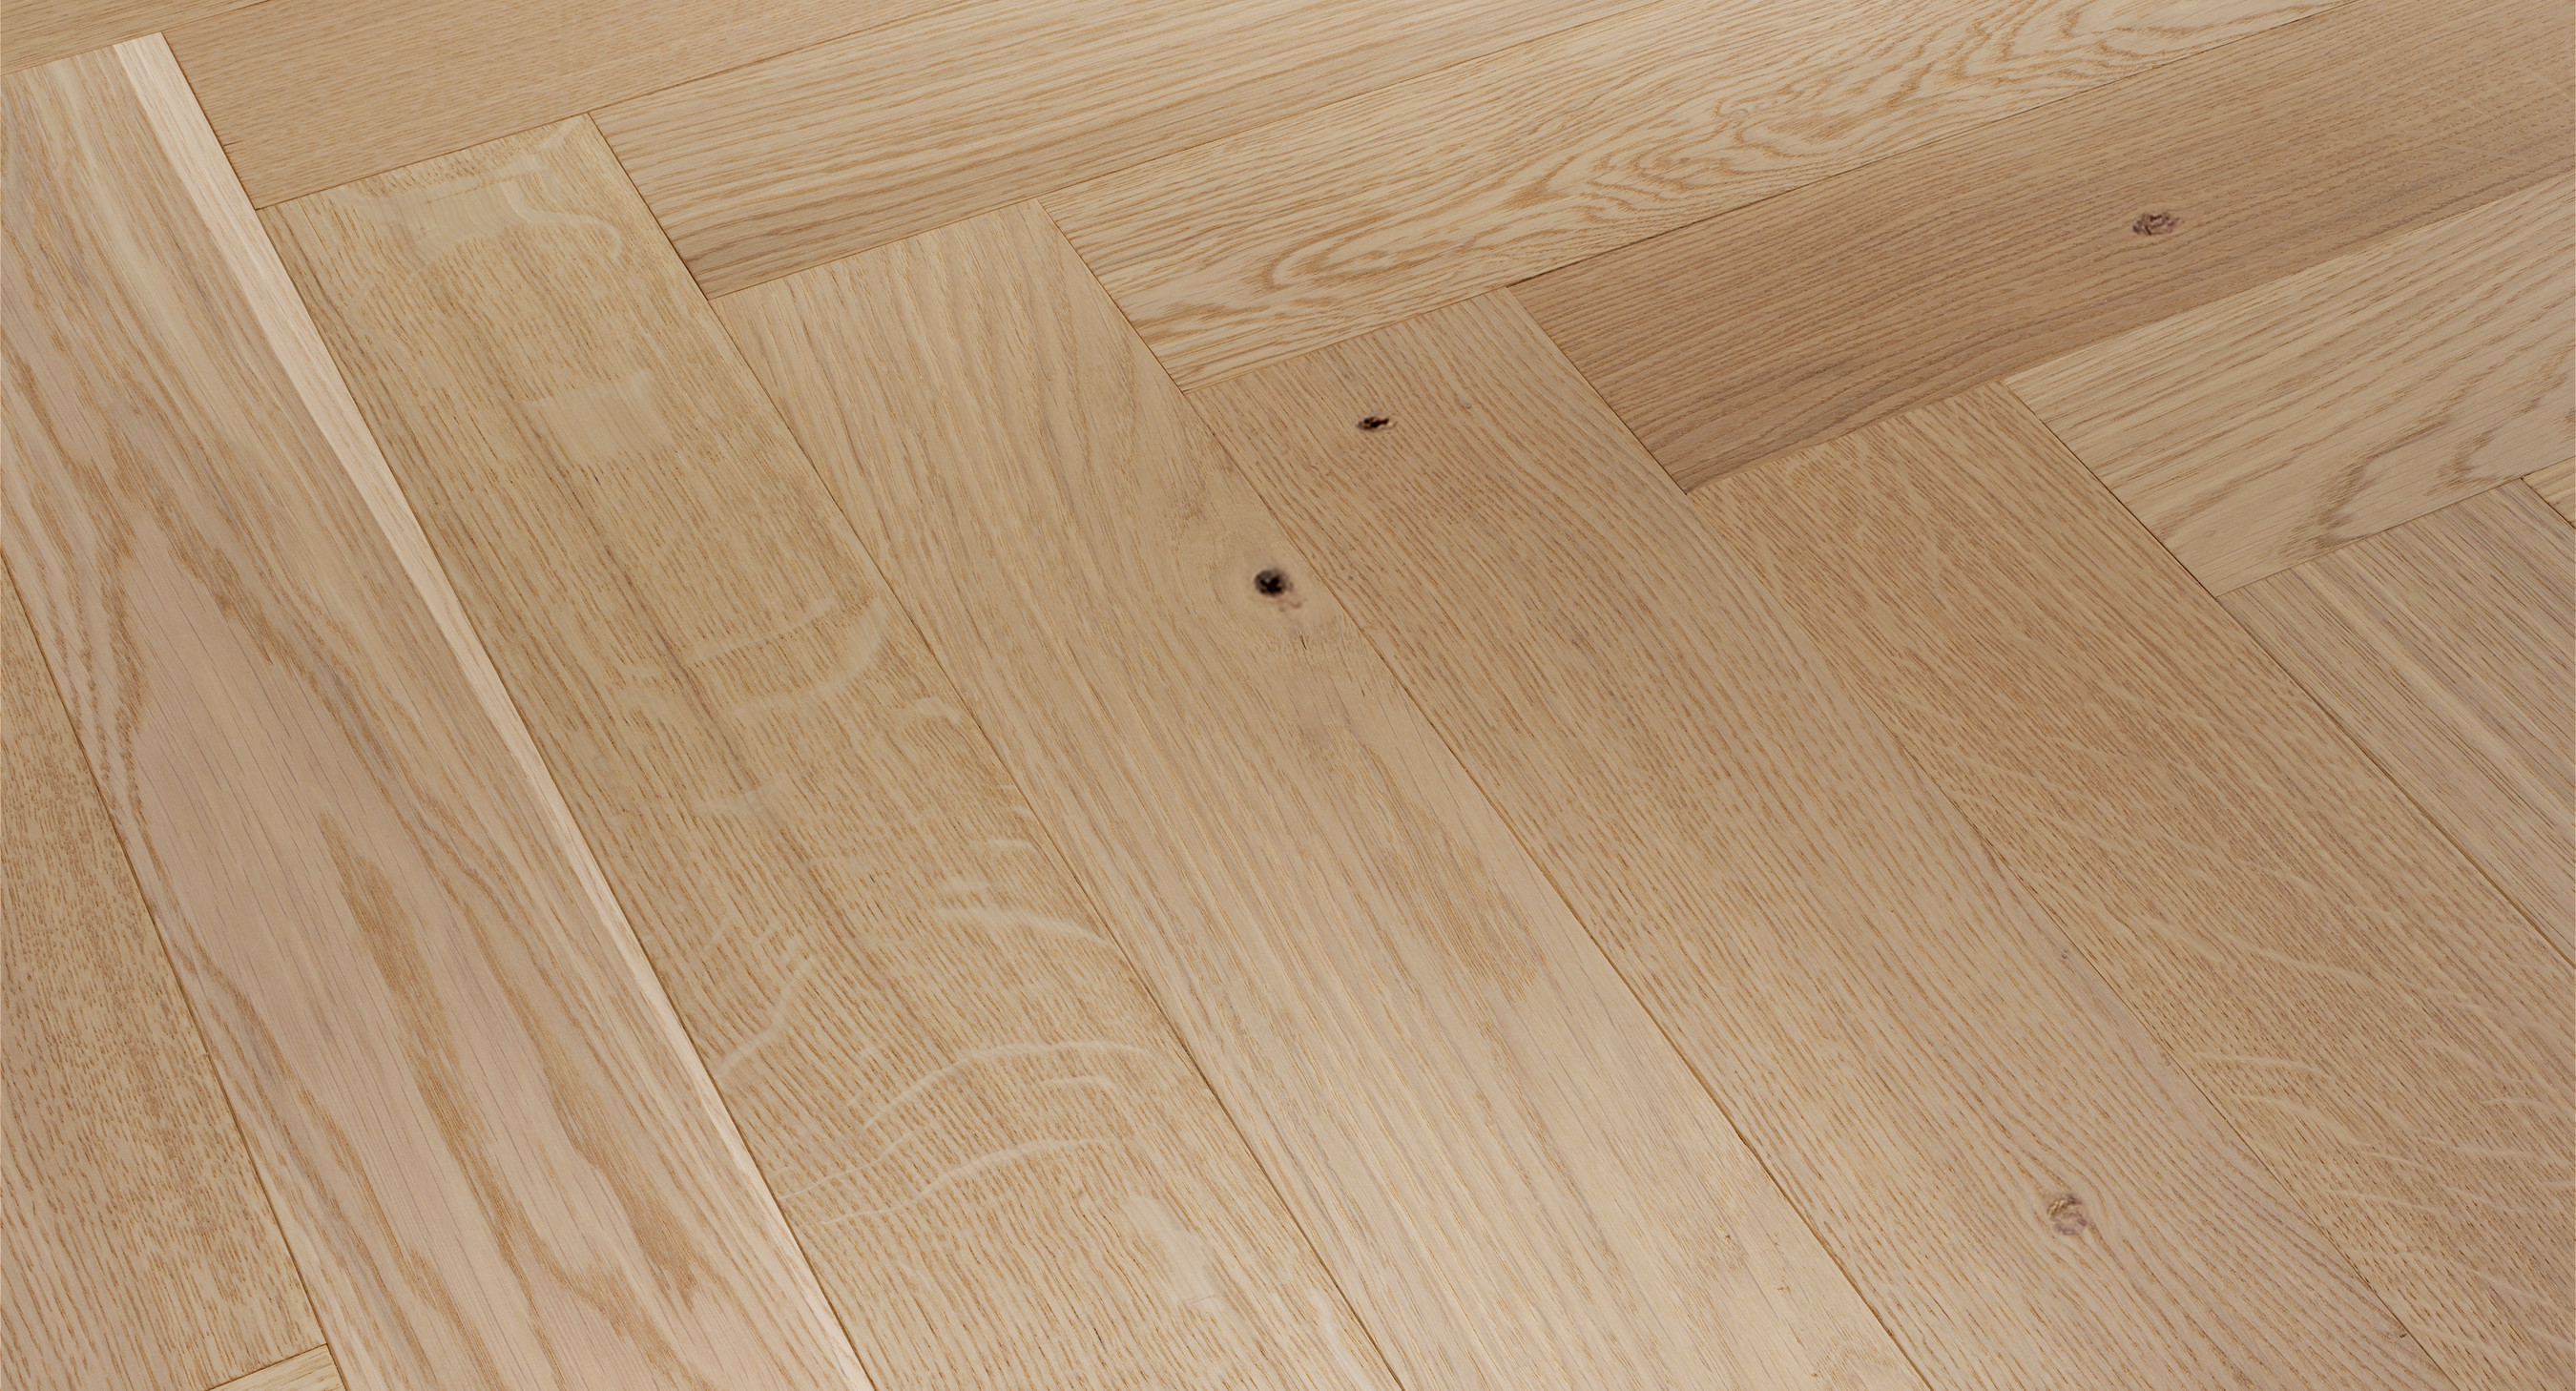 hardwood flooring estimate online of wooden flooring price floor plan ideas inside wooden flooring price trendtime engineered wood flooring products